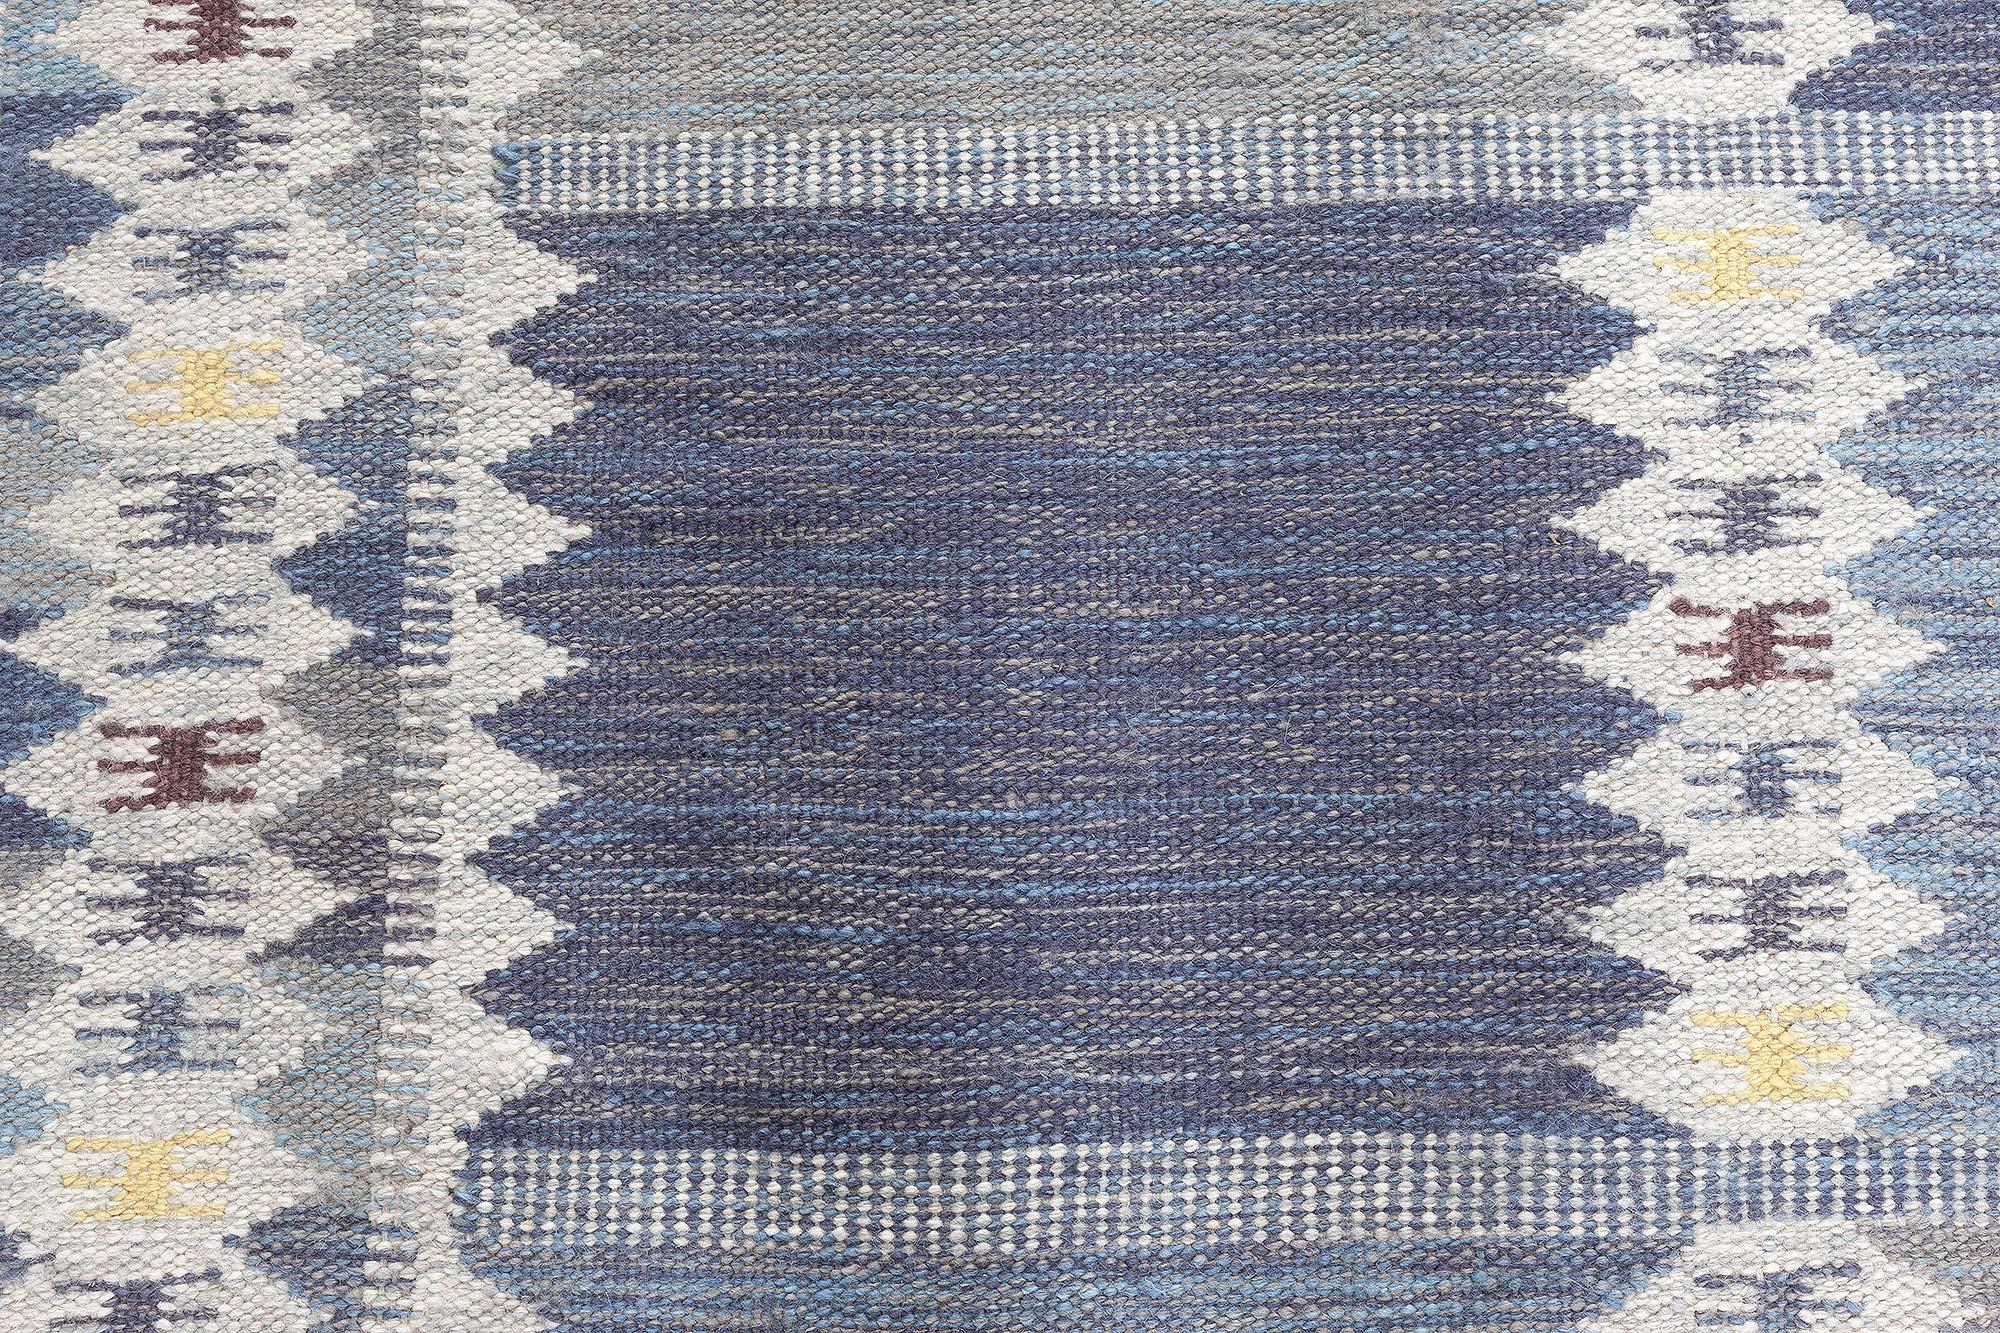 Moderner, schwedisch inspirierter Teppich von Doris Leslie Blau
Größe: 11'0